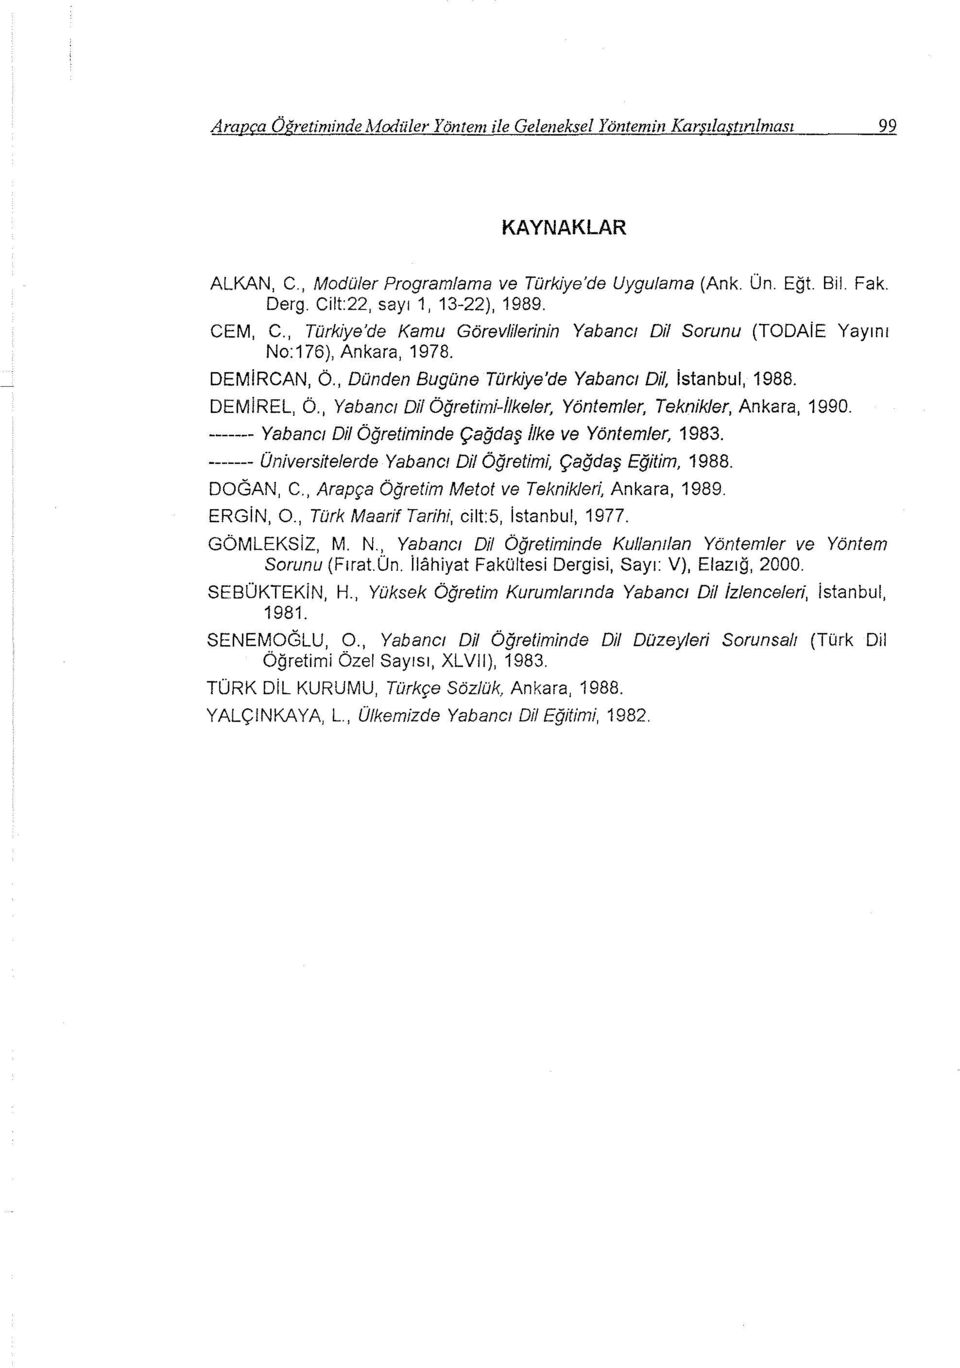 DEMiREL, Ö., Yabanct Dil Öğretimi-ilkeler, Yöntemler, Teknikler, Ankara, 1990. ------- Yabanct Dil Öğretiminde Çağdaş ilke ve Yöntemler, 1983.